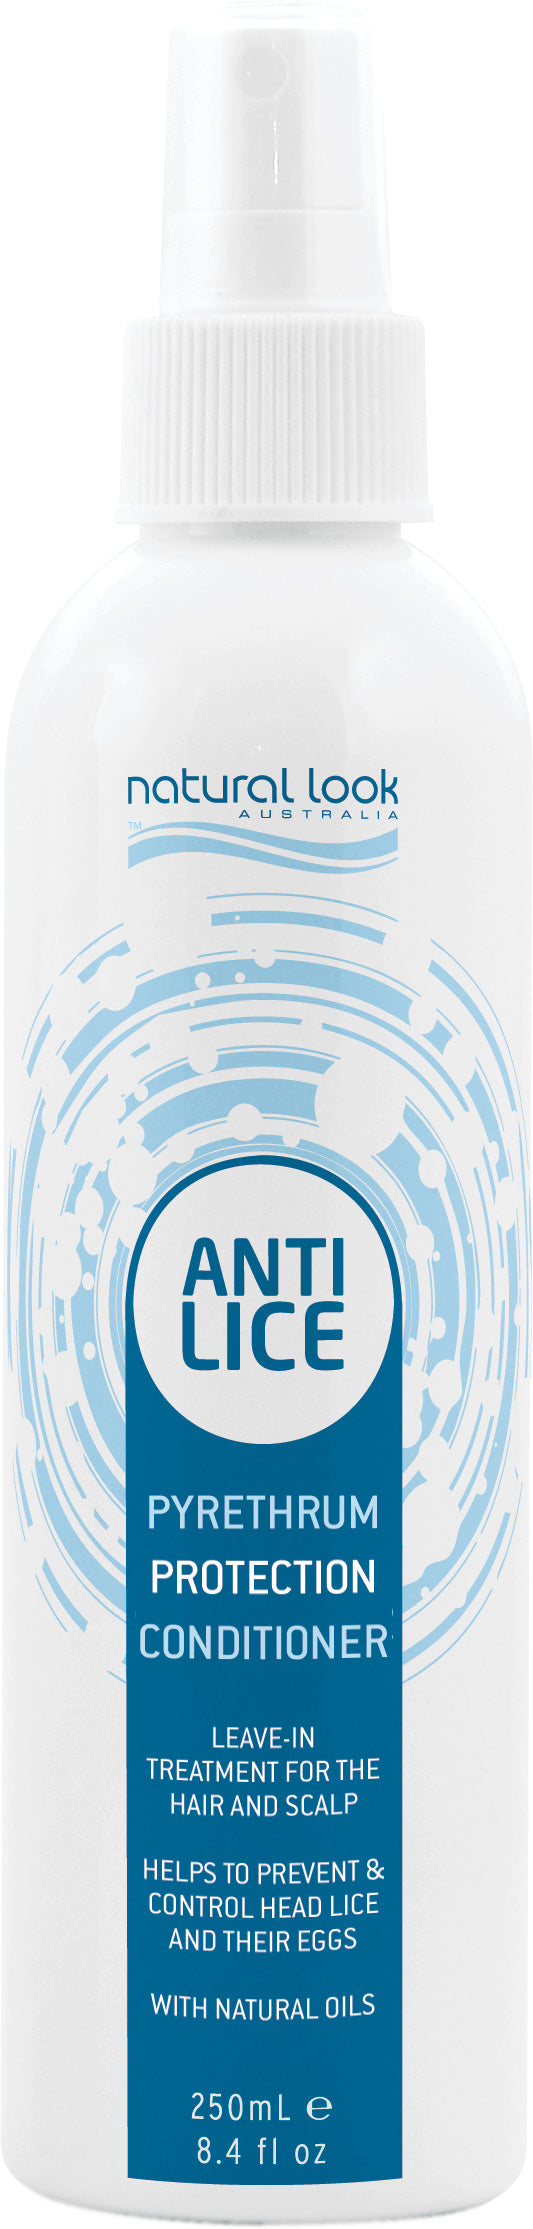 Anti Lice Conditioner 250ml